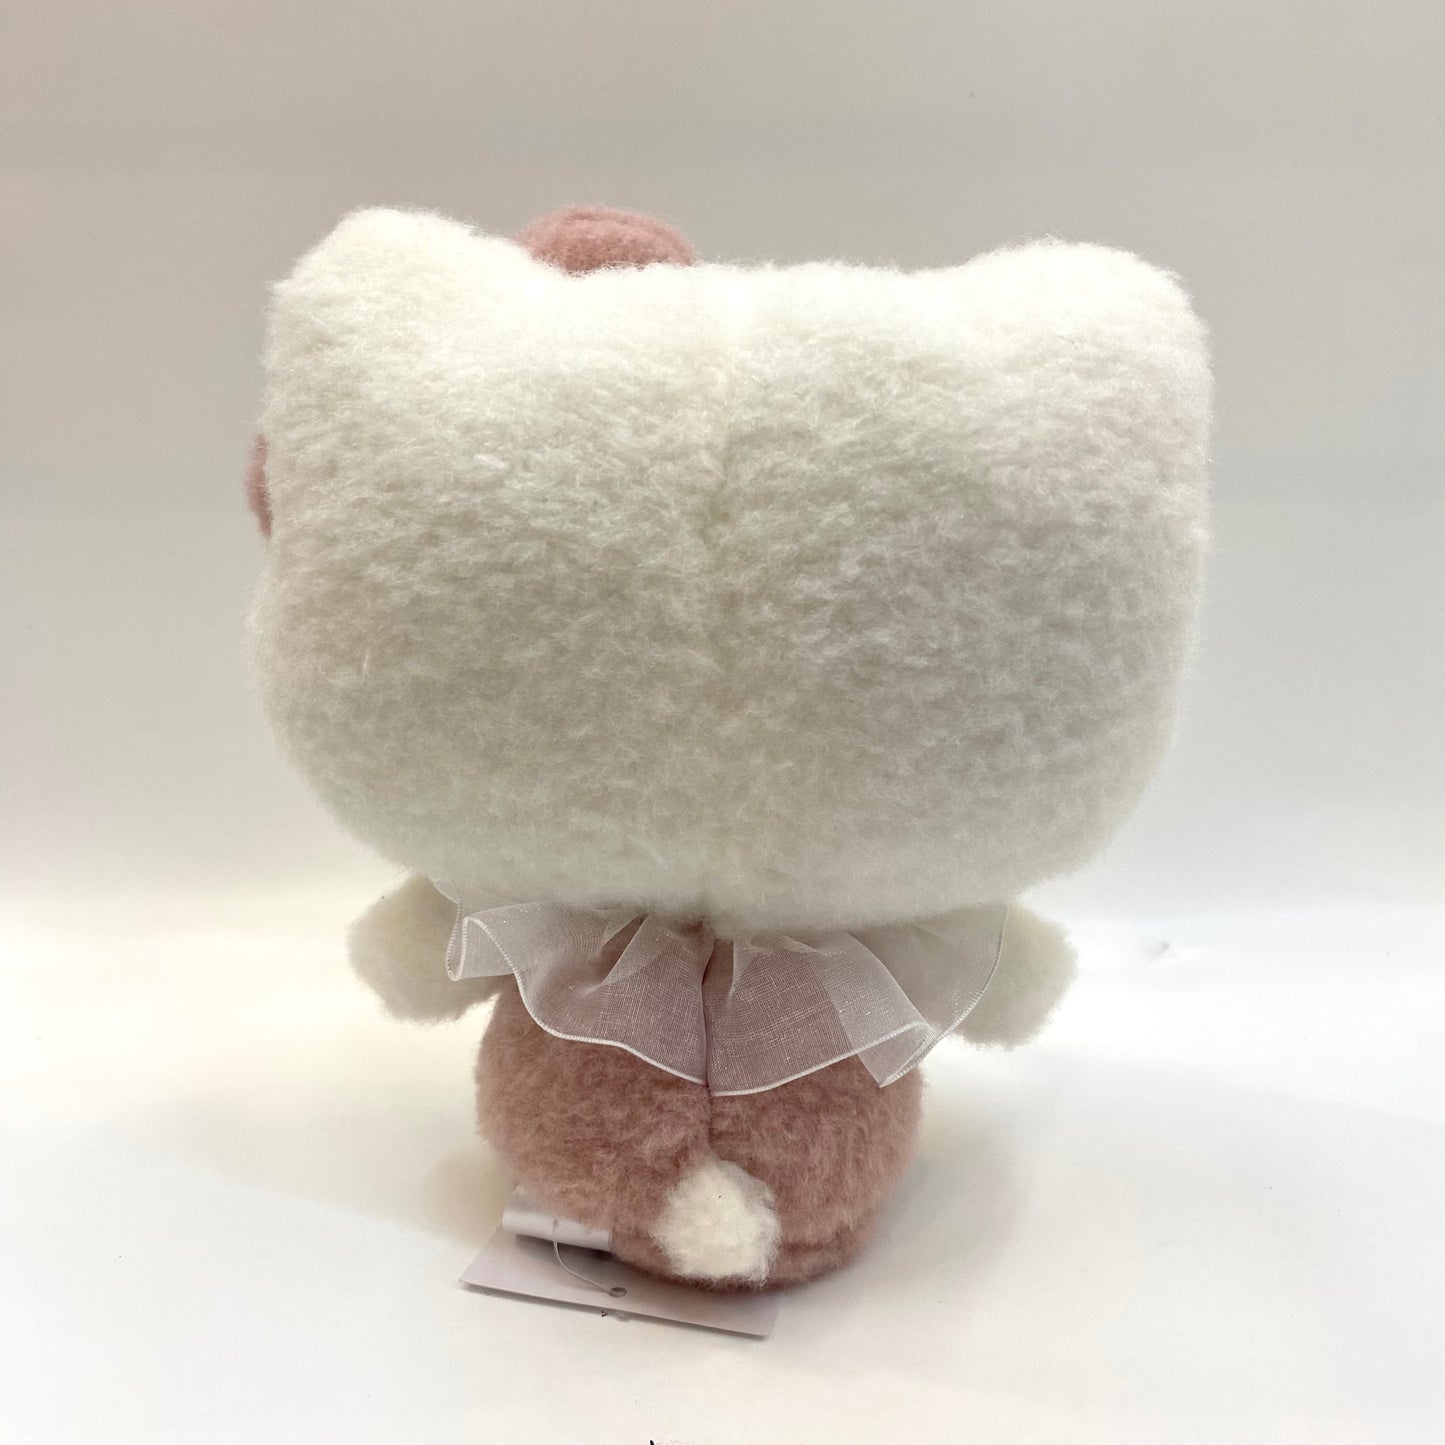 Sanrio Soft & Cuddly 7" Plush